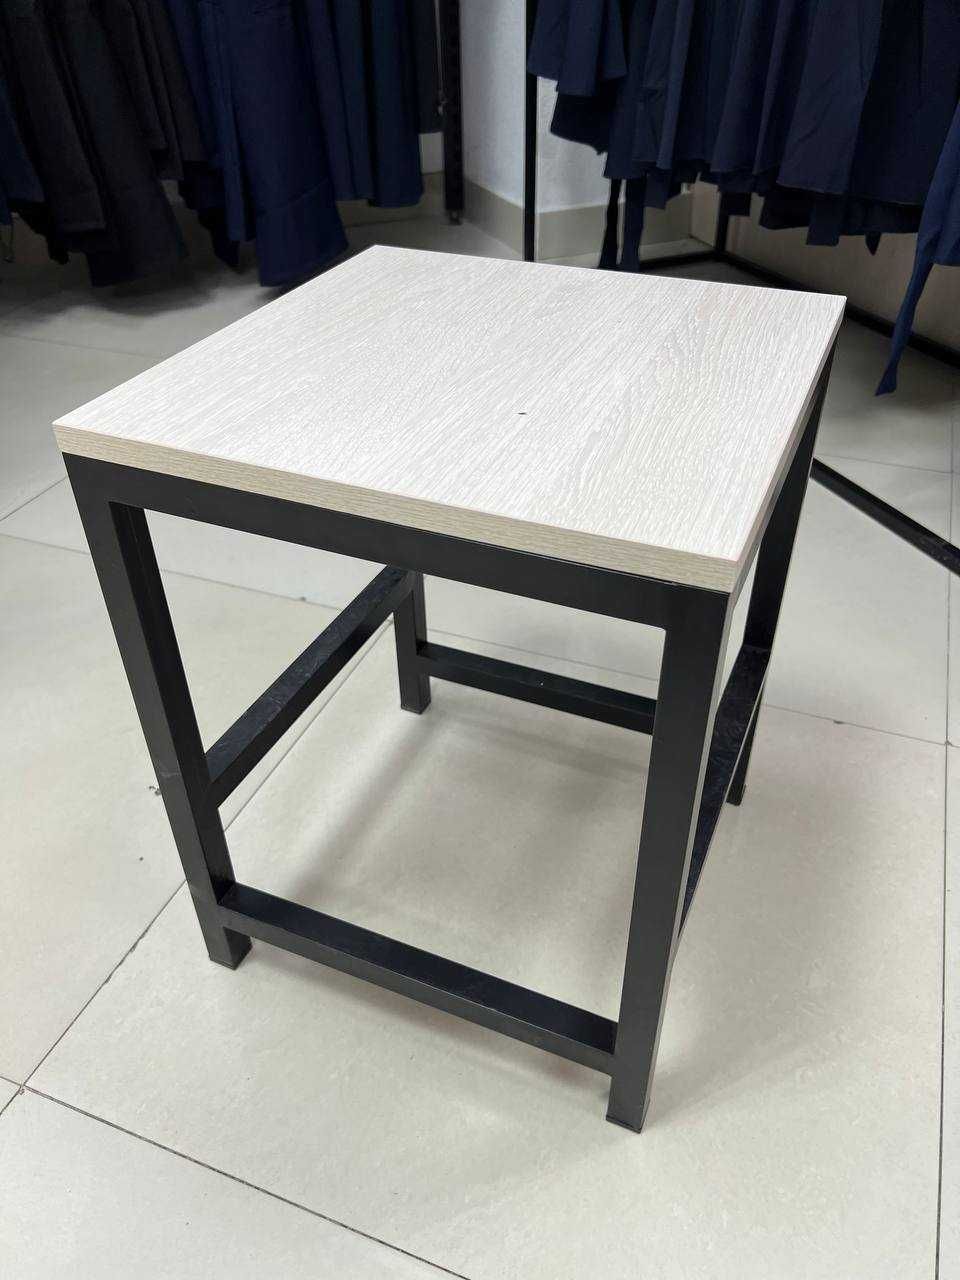 Artel - производим мебель пo индивидуальным дизайн проектам.